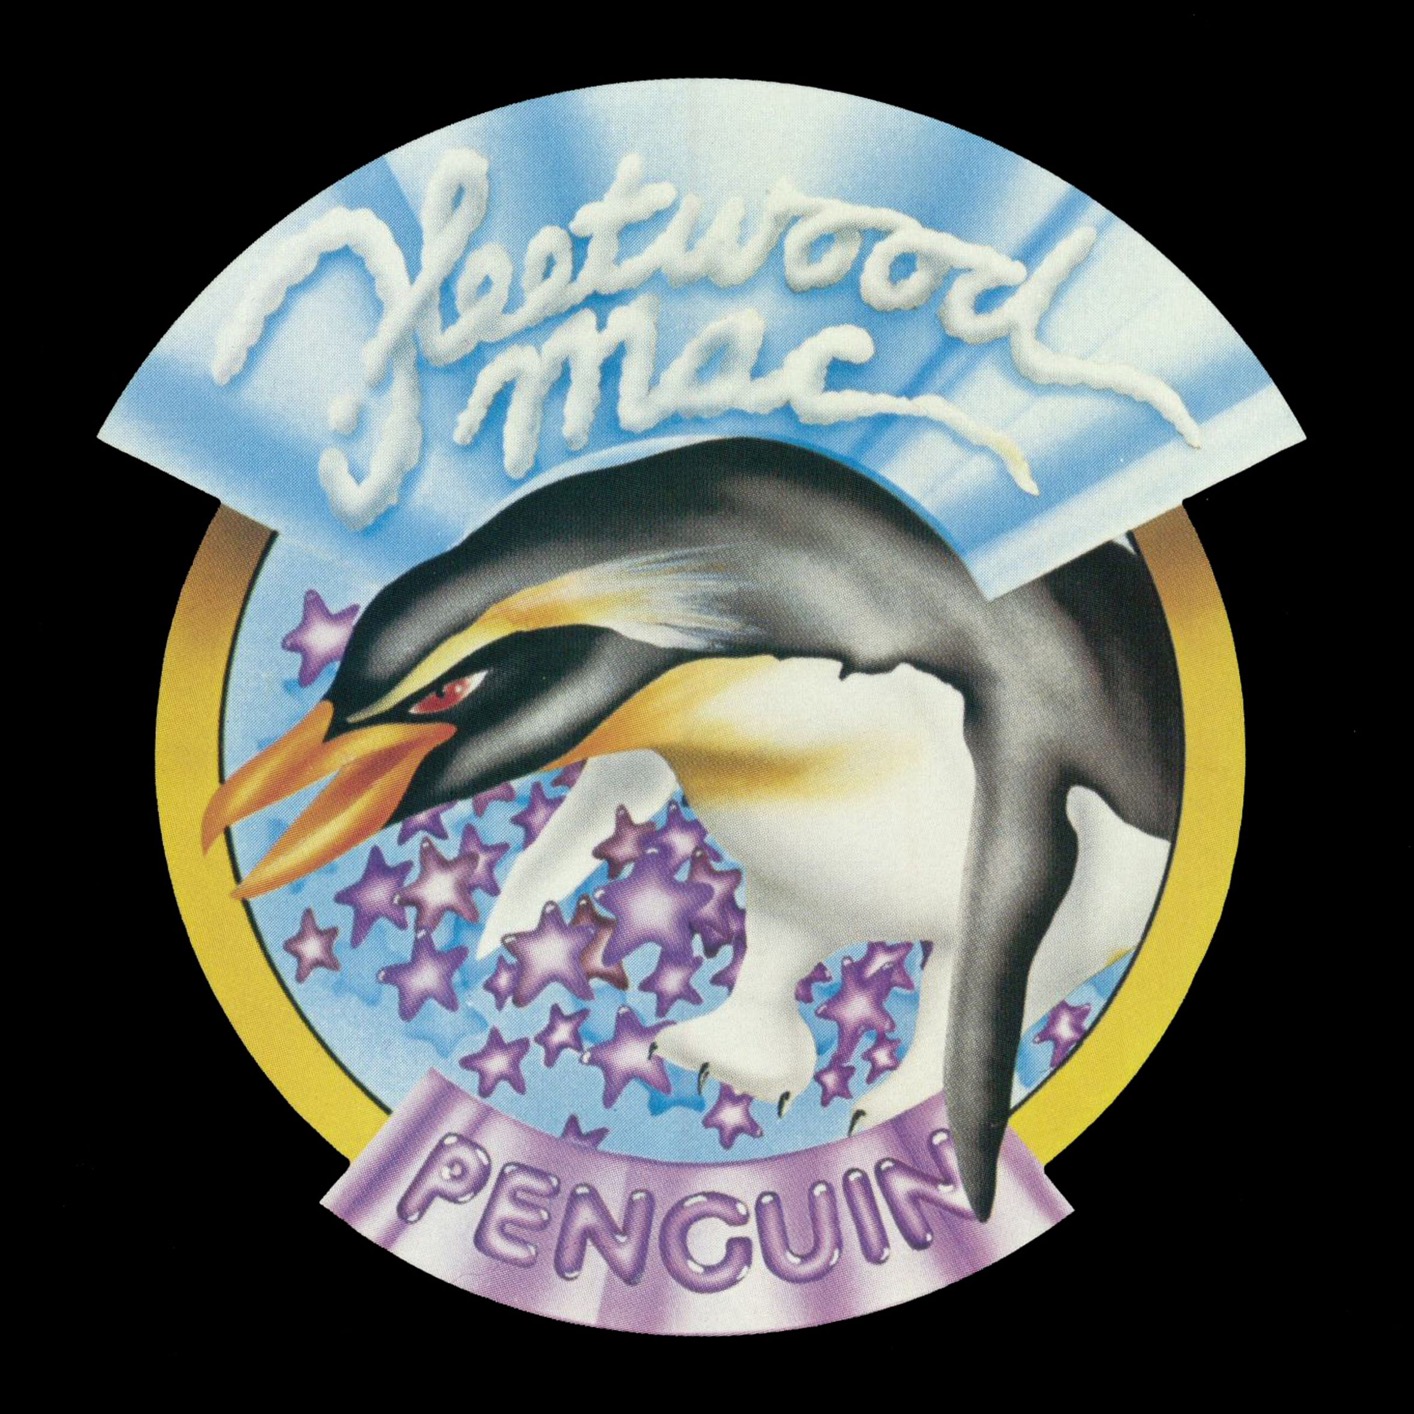 Fleetwood Mac - Penguin (1973/2017) [Mora FLAC 24bit/192kHz]